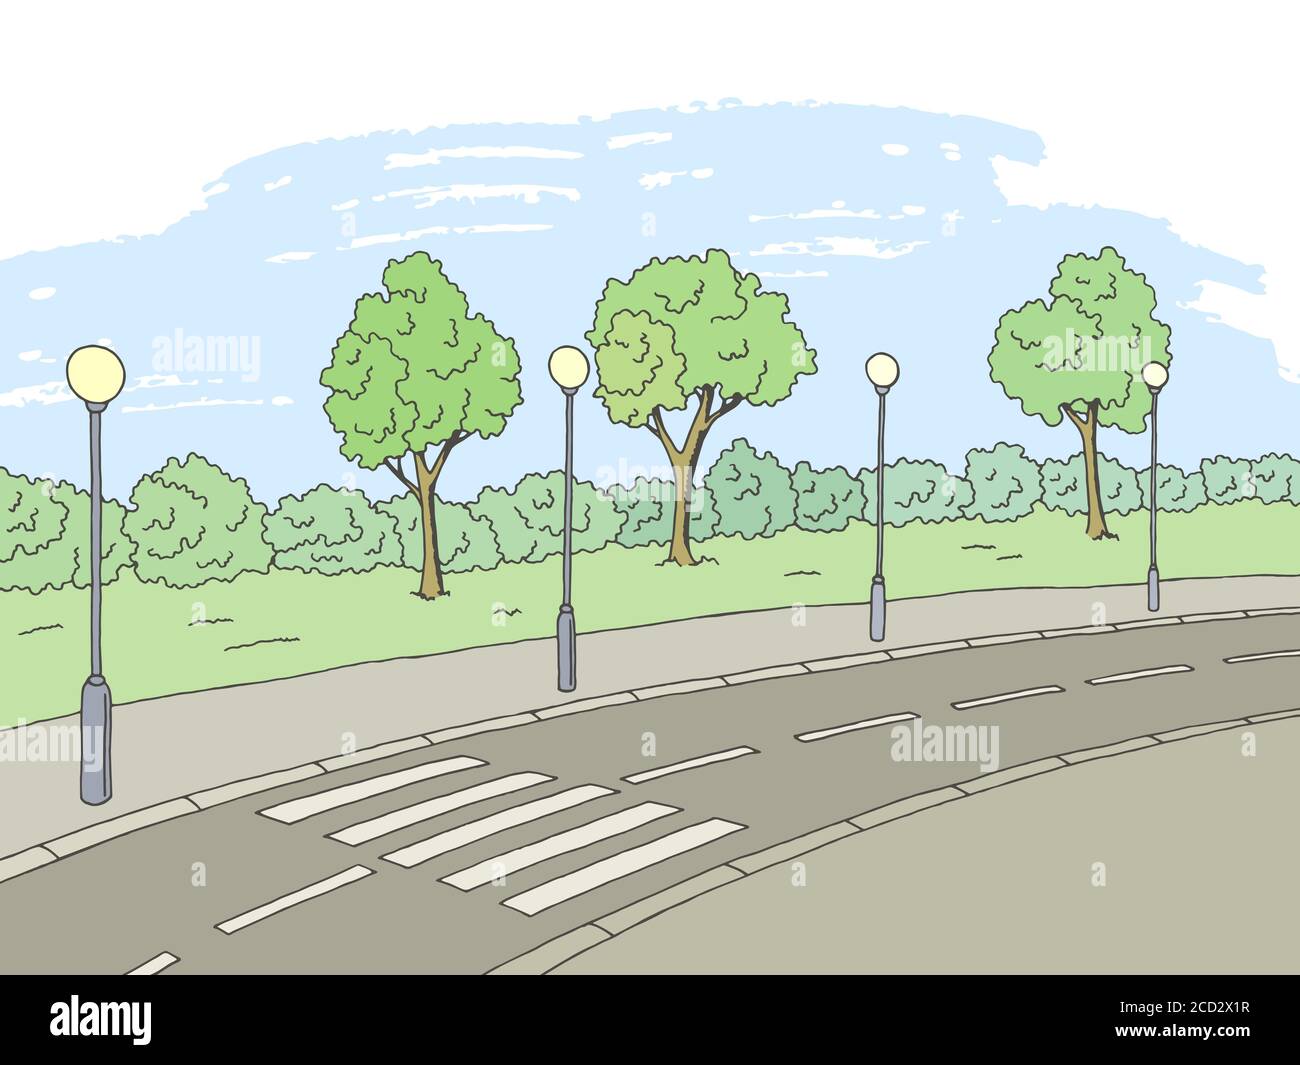 Crosswalk Straße Grafik Farbe Skizze Landschaft Illustration Vektor Stock Vektor